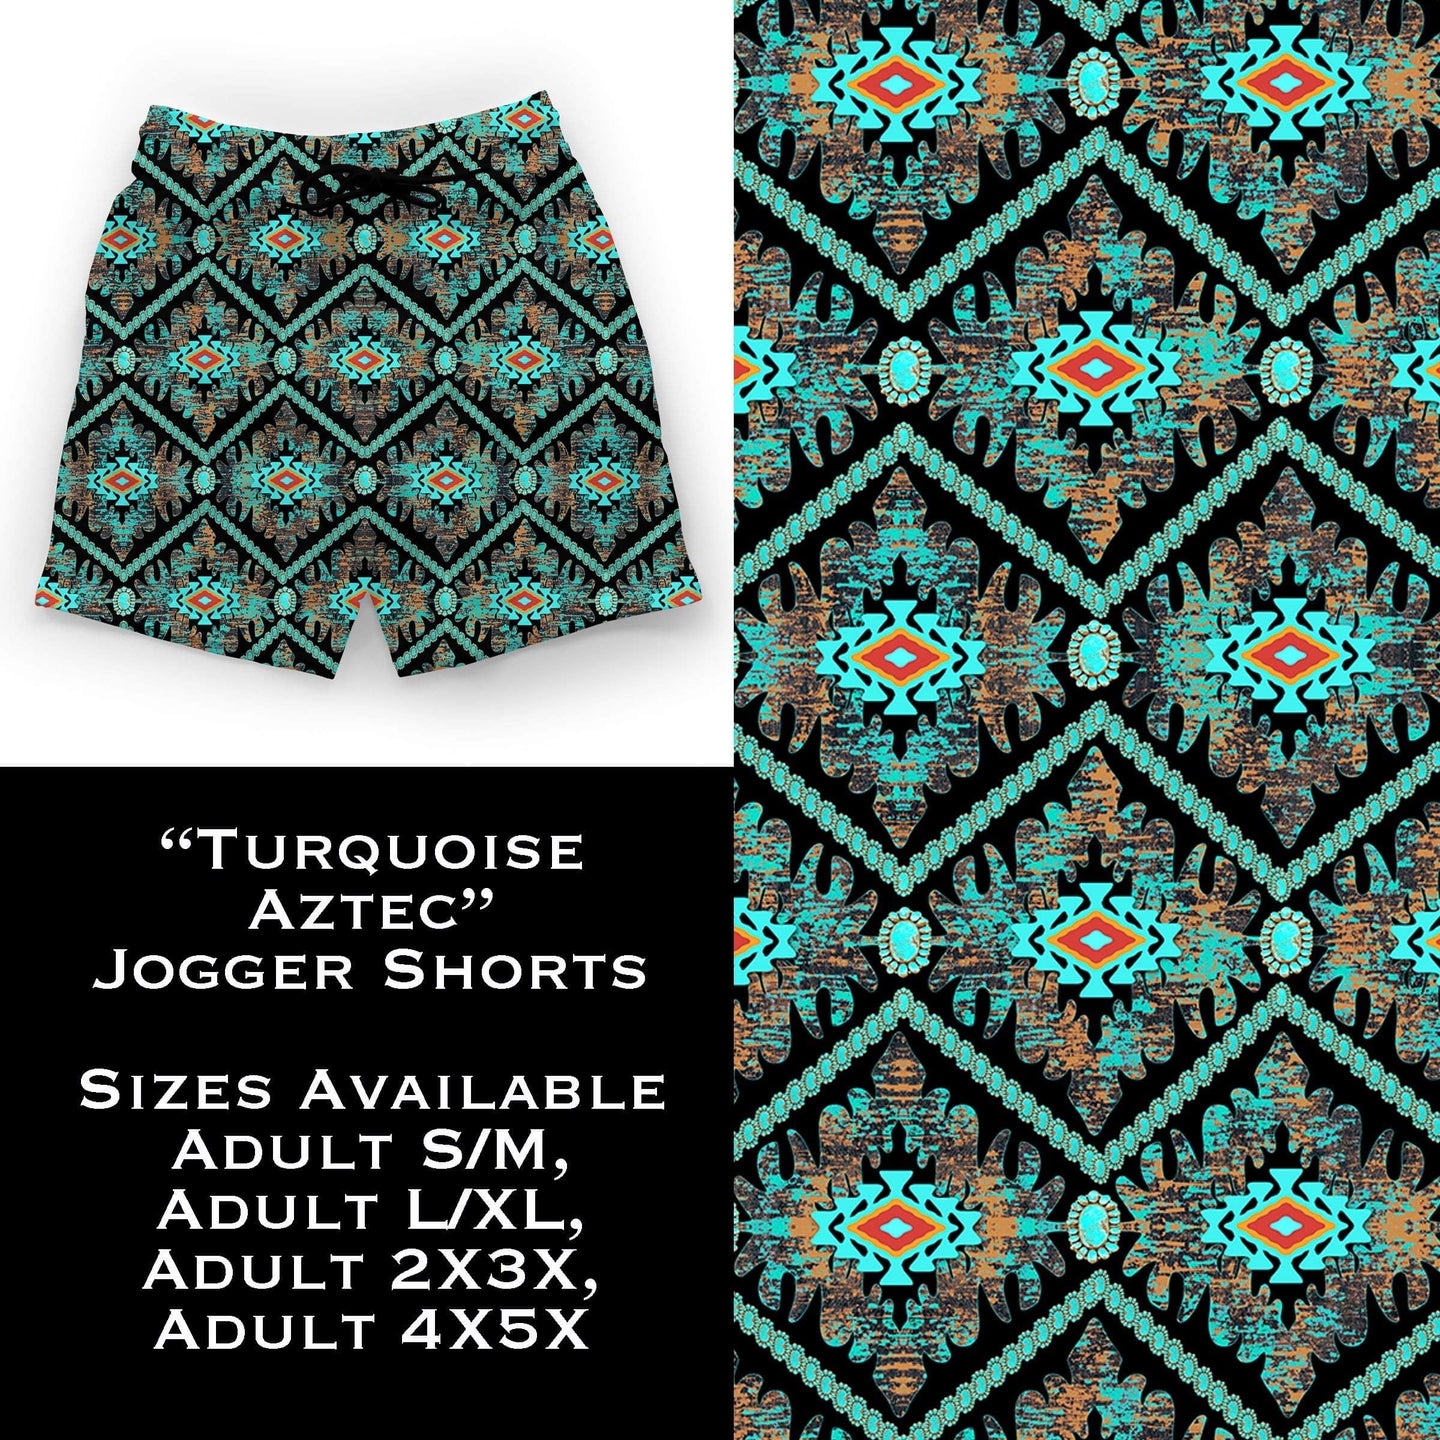 B108 - Turquoise Aztec Jogger Shorts